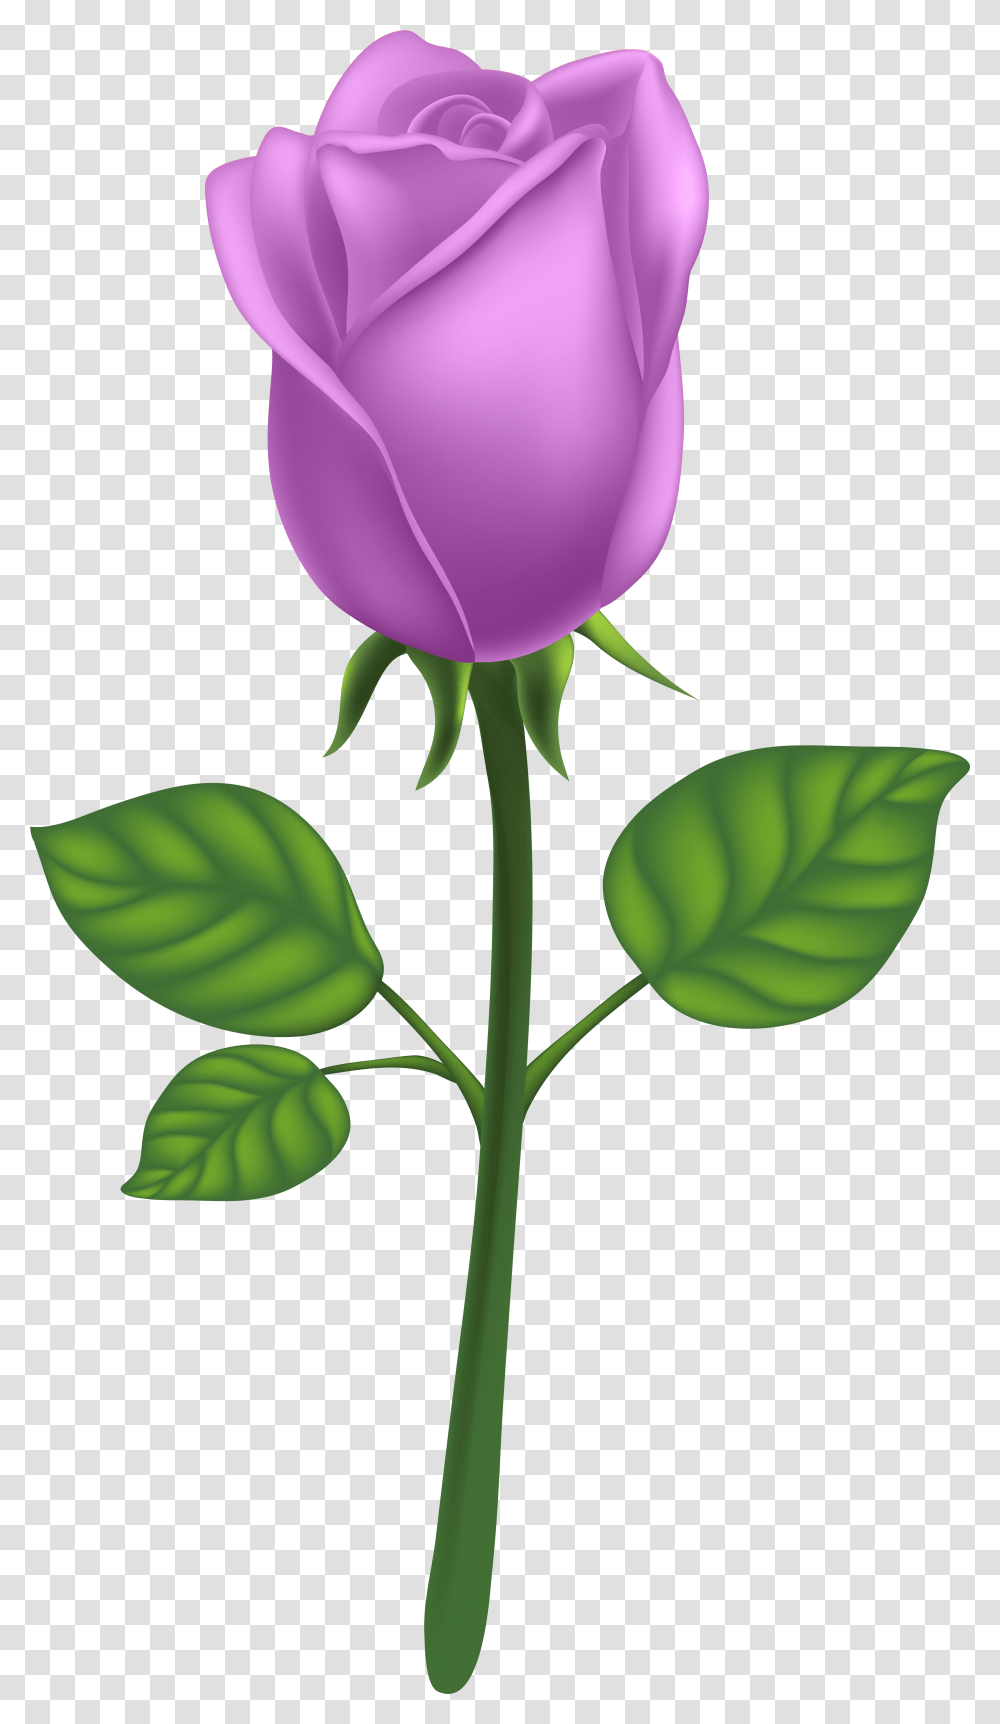 Purple Long Stem Rose Clipart Background Rose Pink, Flower, Plant, Blossom, Petal Transparent Png